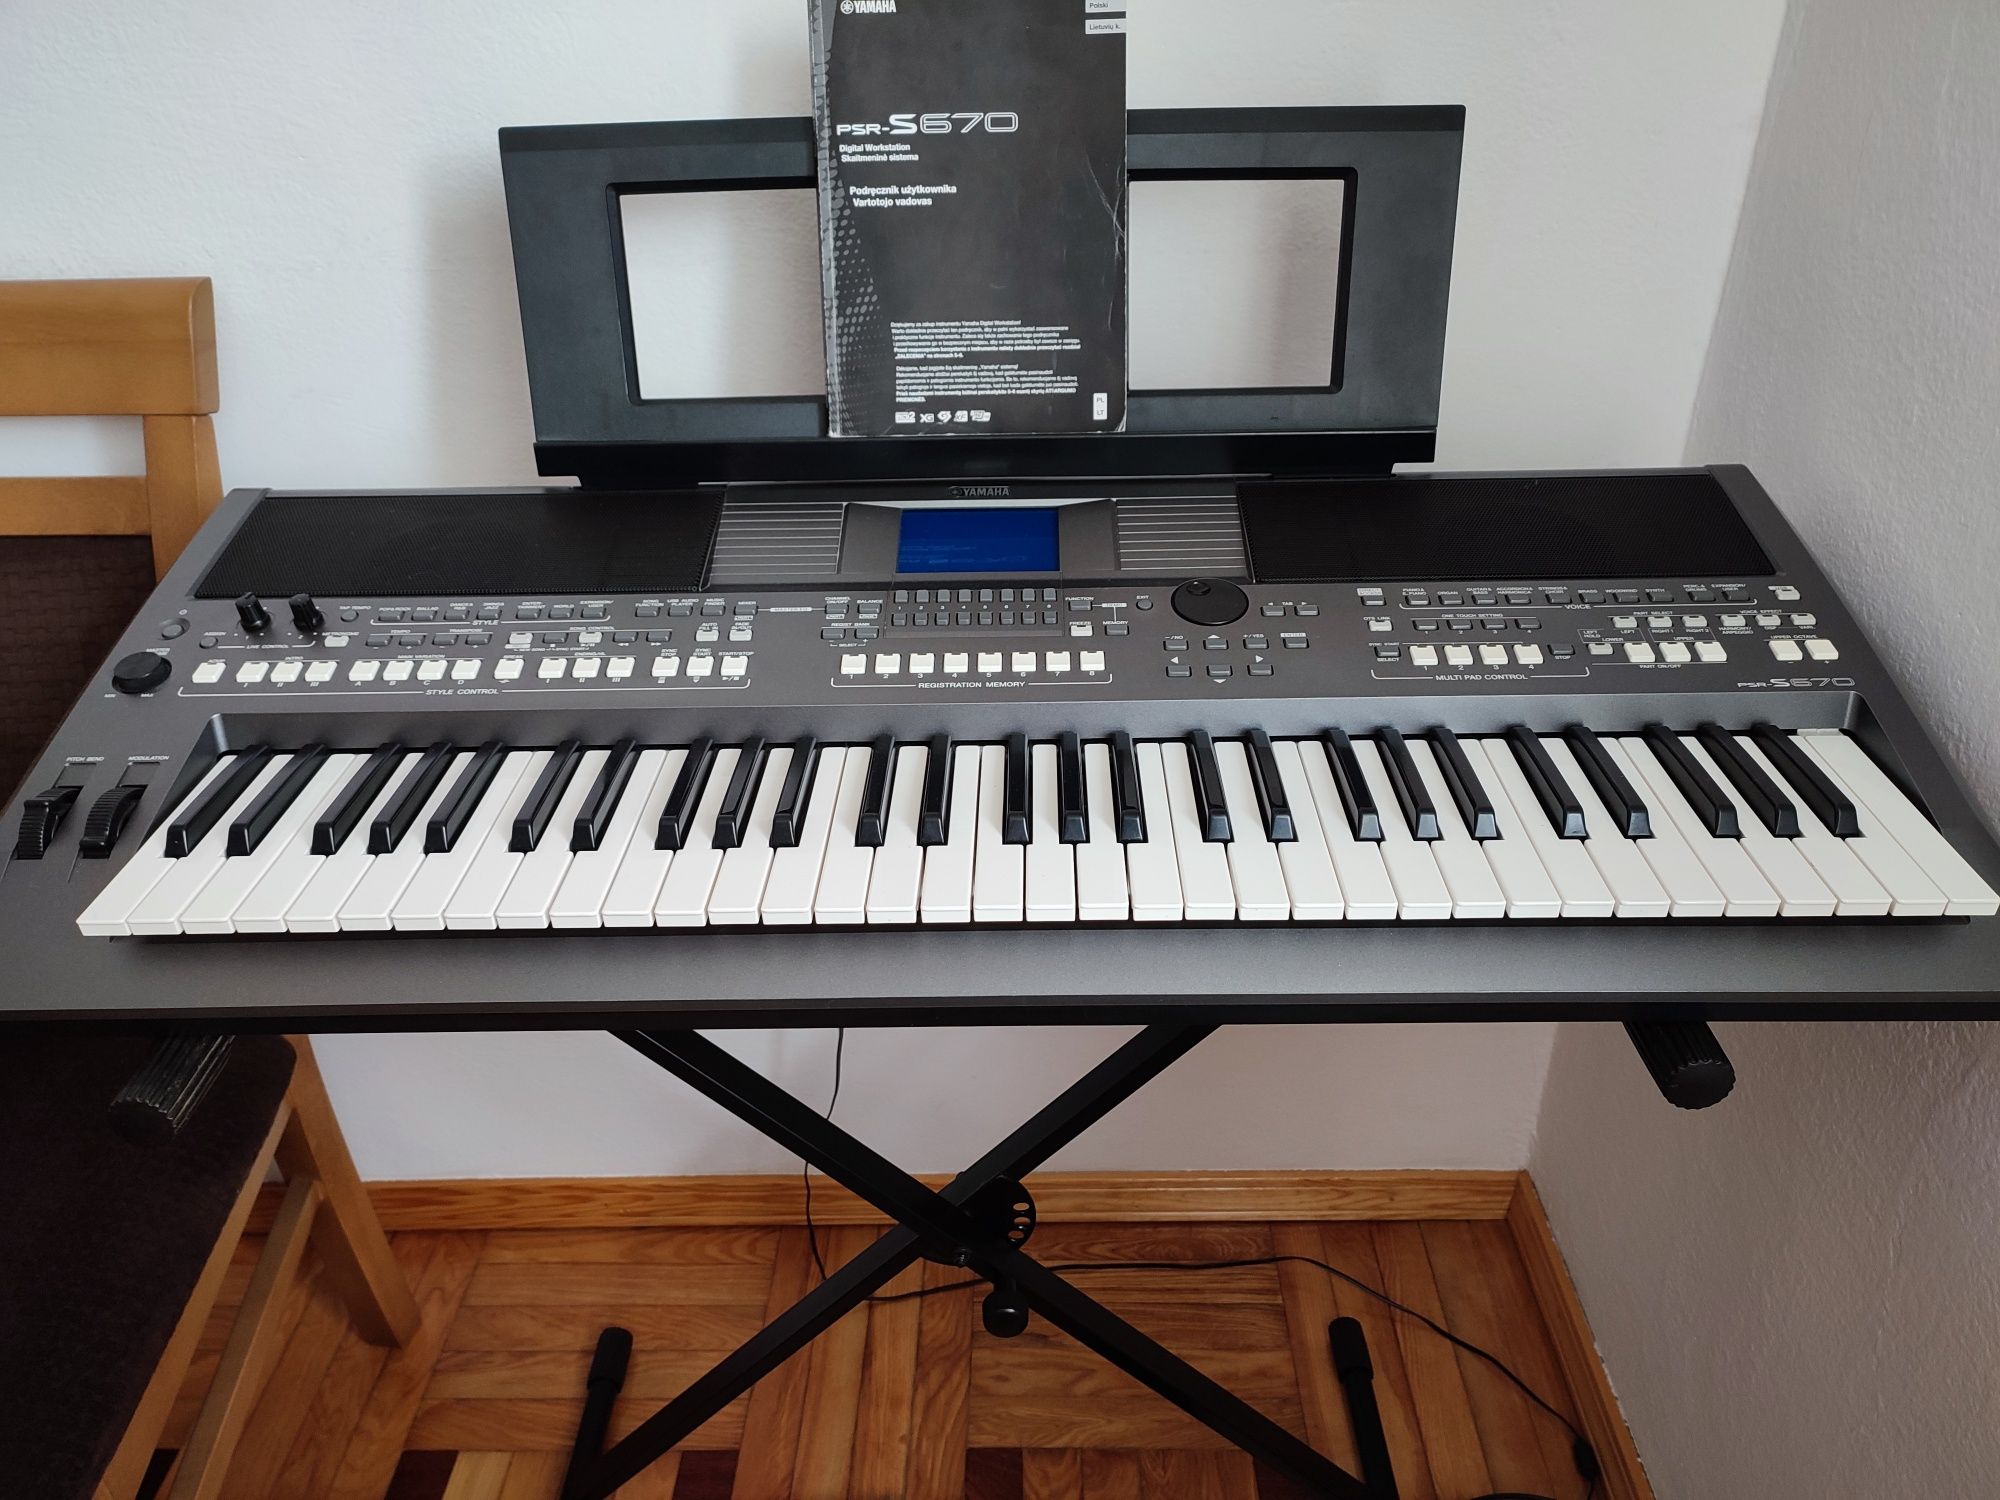 Keyboard Yamaha S 670